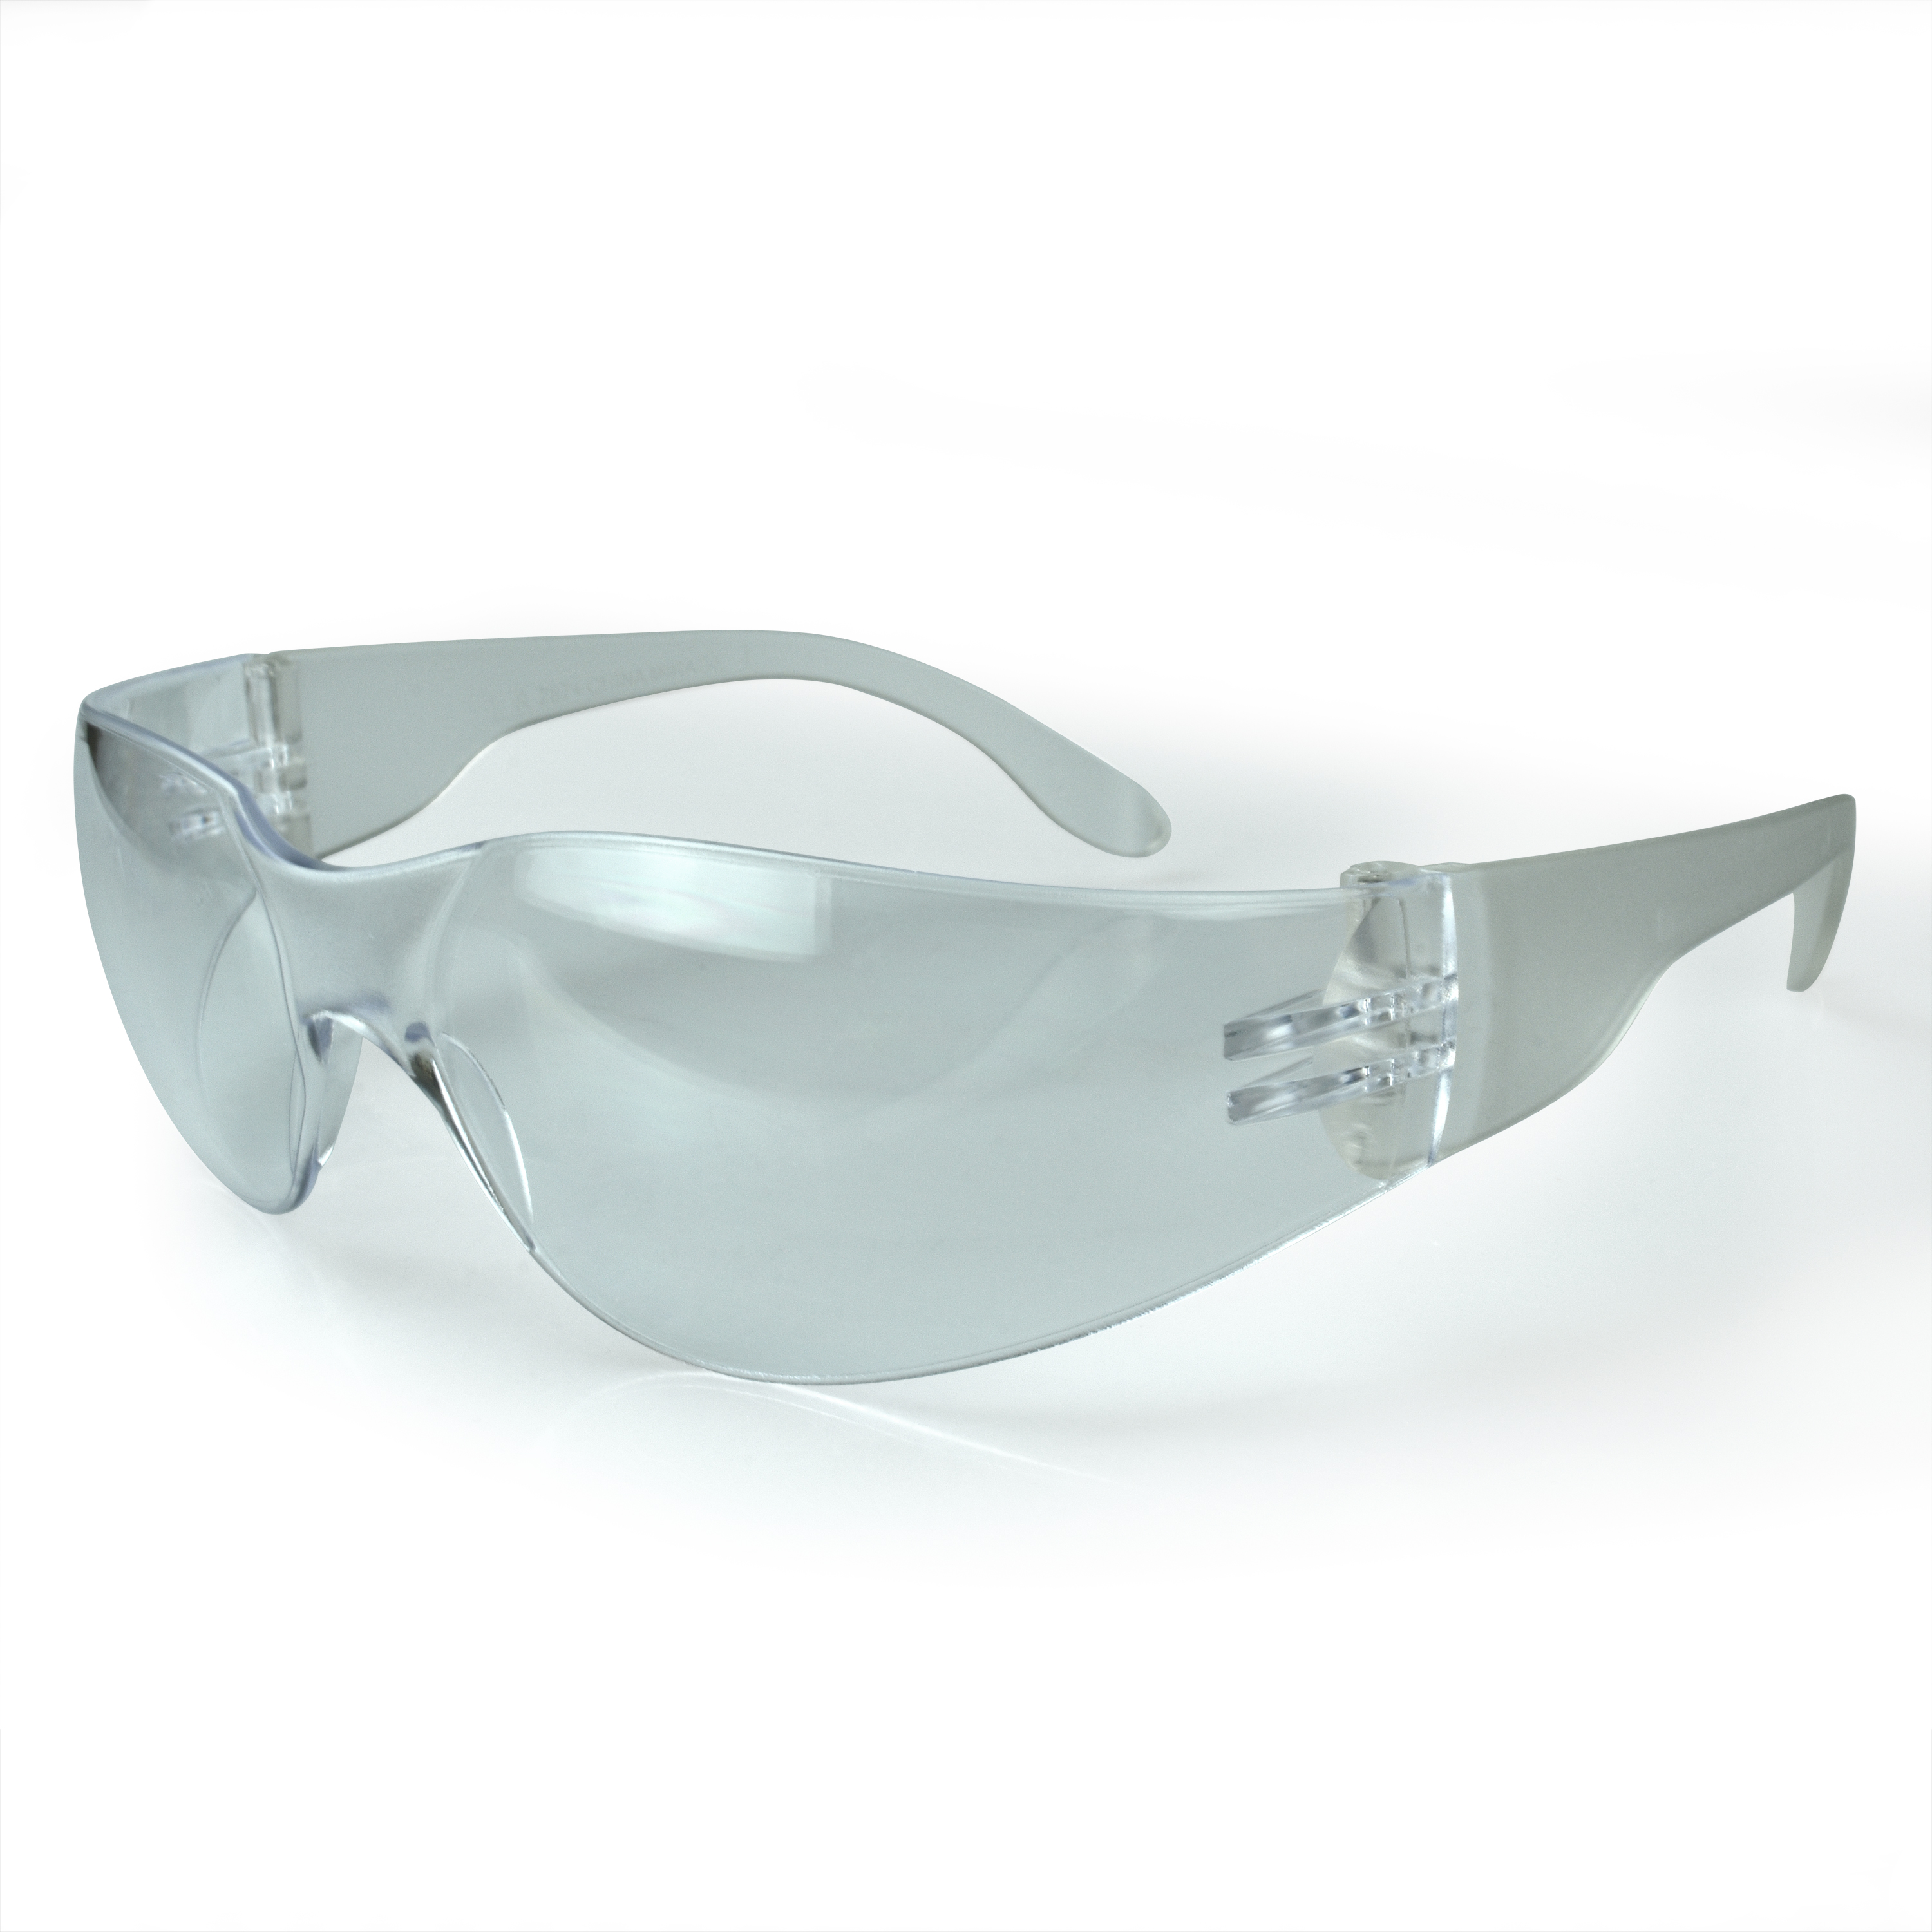 Mirage™ Safety Eyewear - Clear Frame - Clear Anti-Fog Lens - Anti-Fog Lens